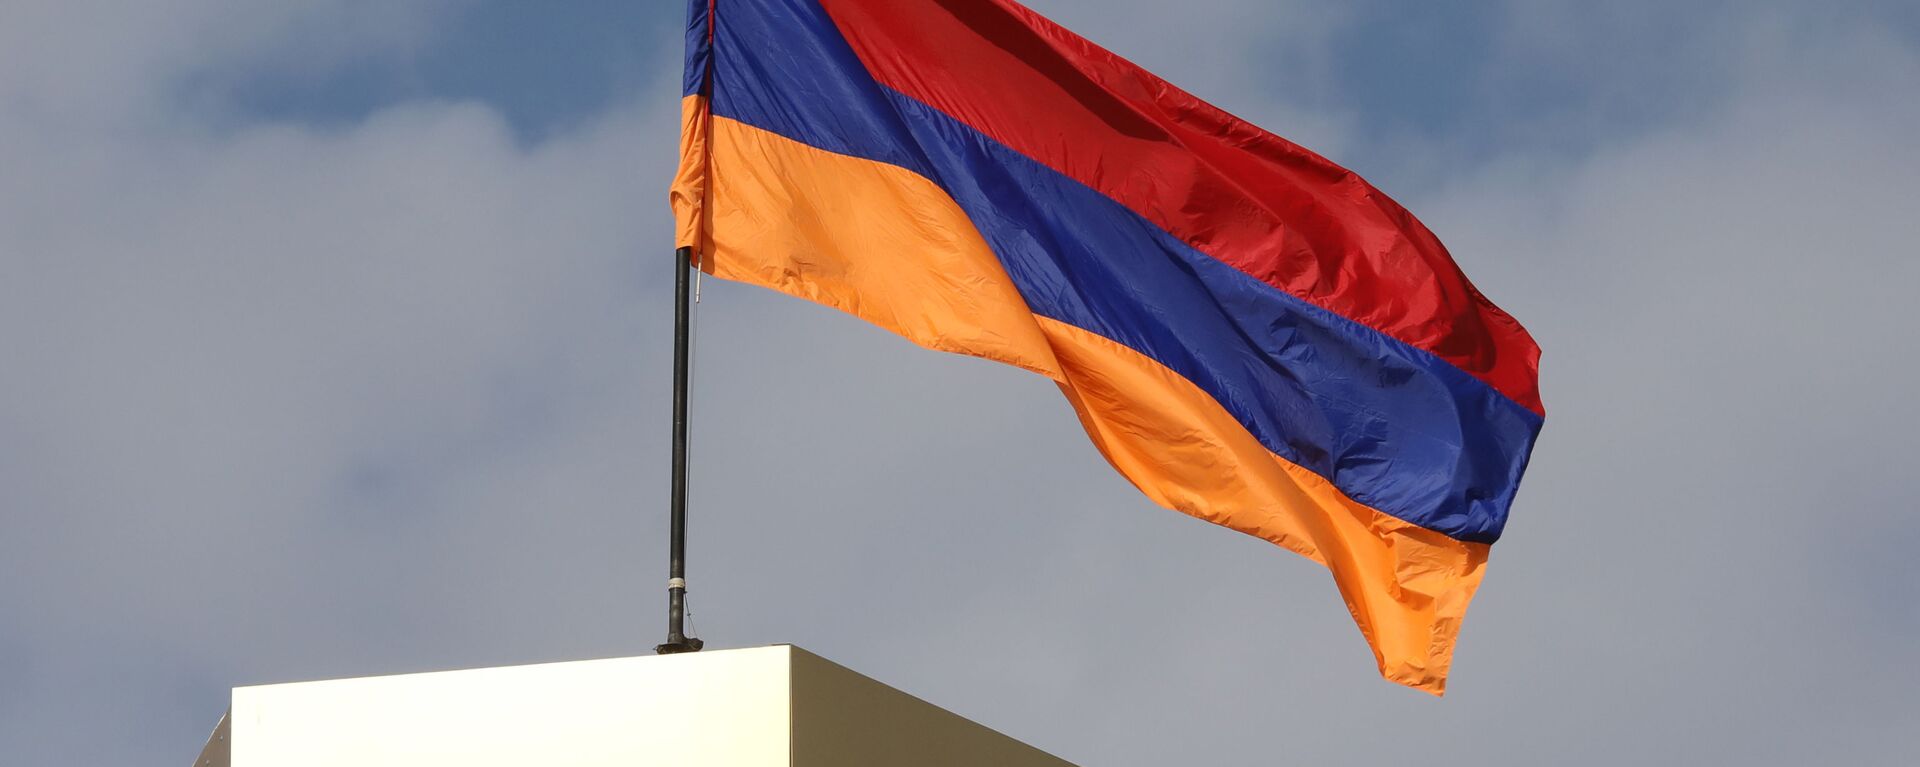 Ermenistan bayrak - Ermenistan bayrağı - Sputnik Türkiye, 1920, 14.09.2022